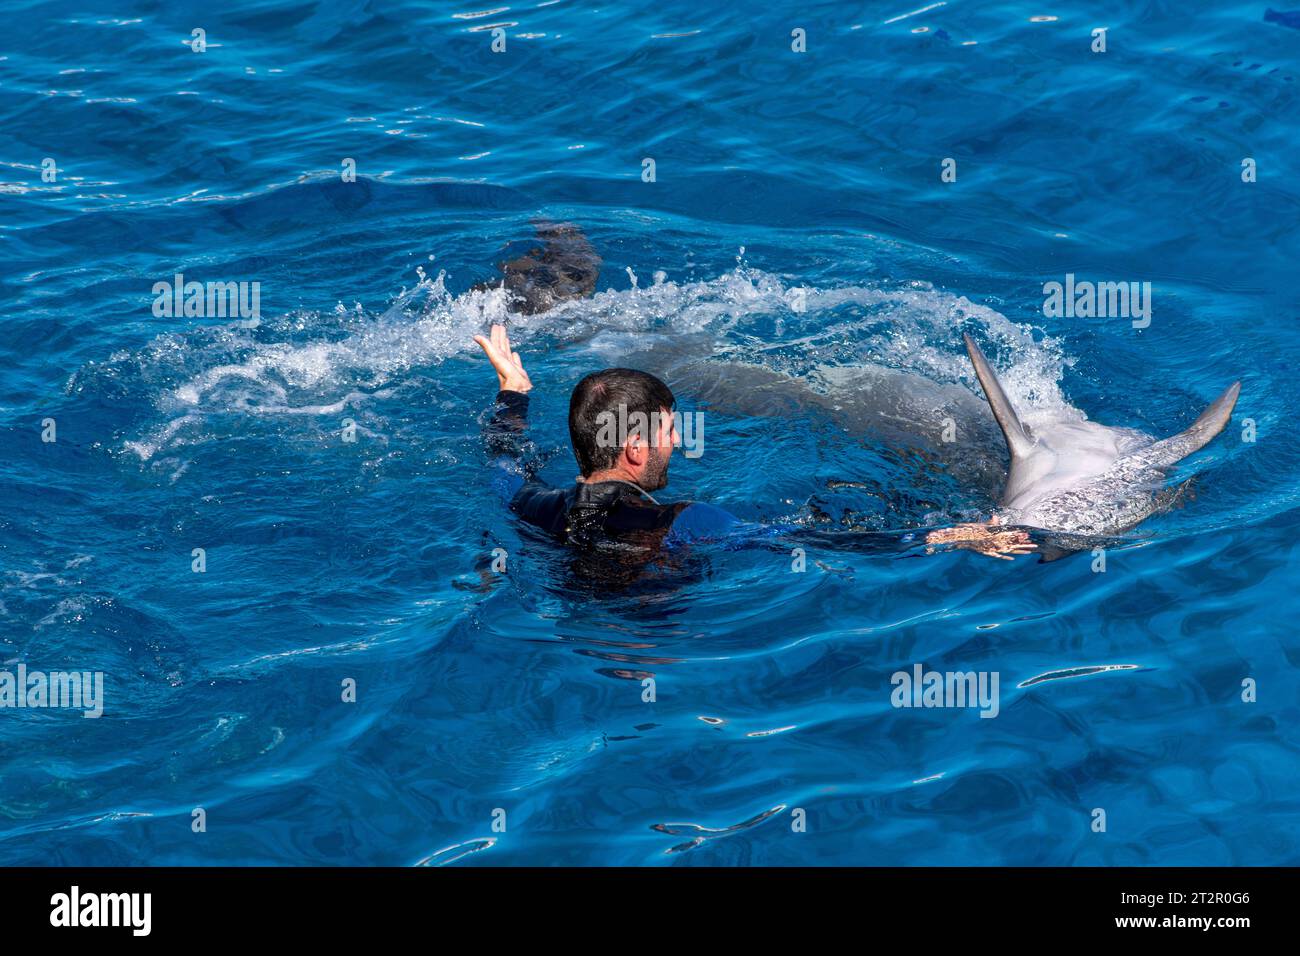 Les dauphins et ses instructeurs effectuent quelques acrobaties. Les animaux montrent la présentation dans l'eau bleue dans l'aquarium. Banque D'Images